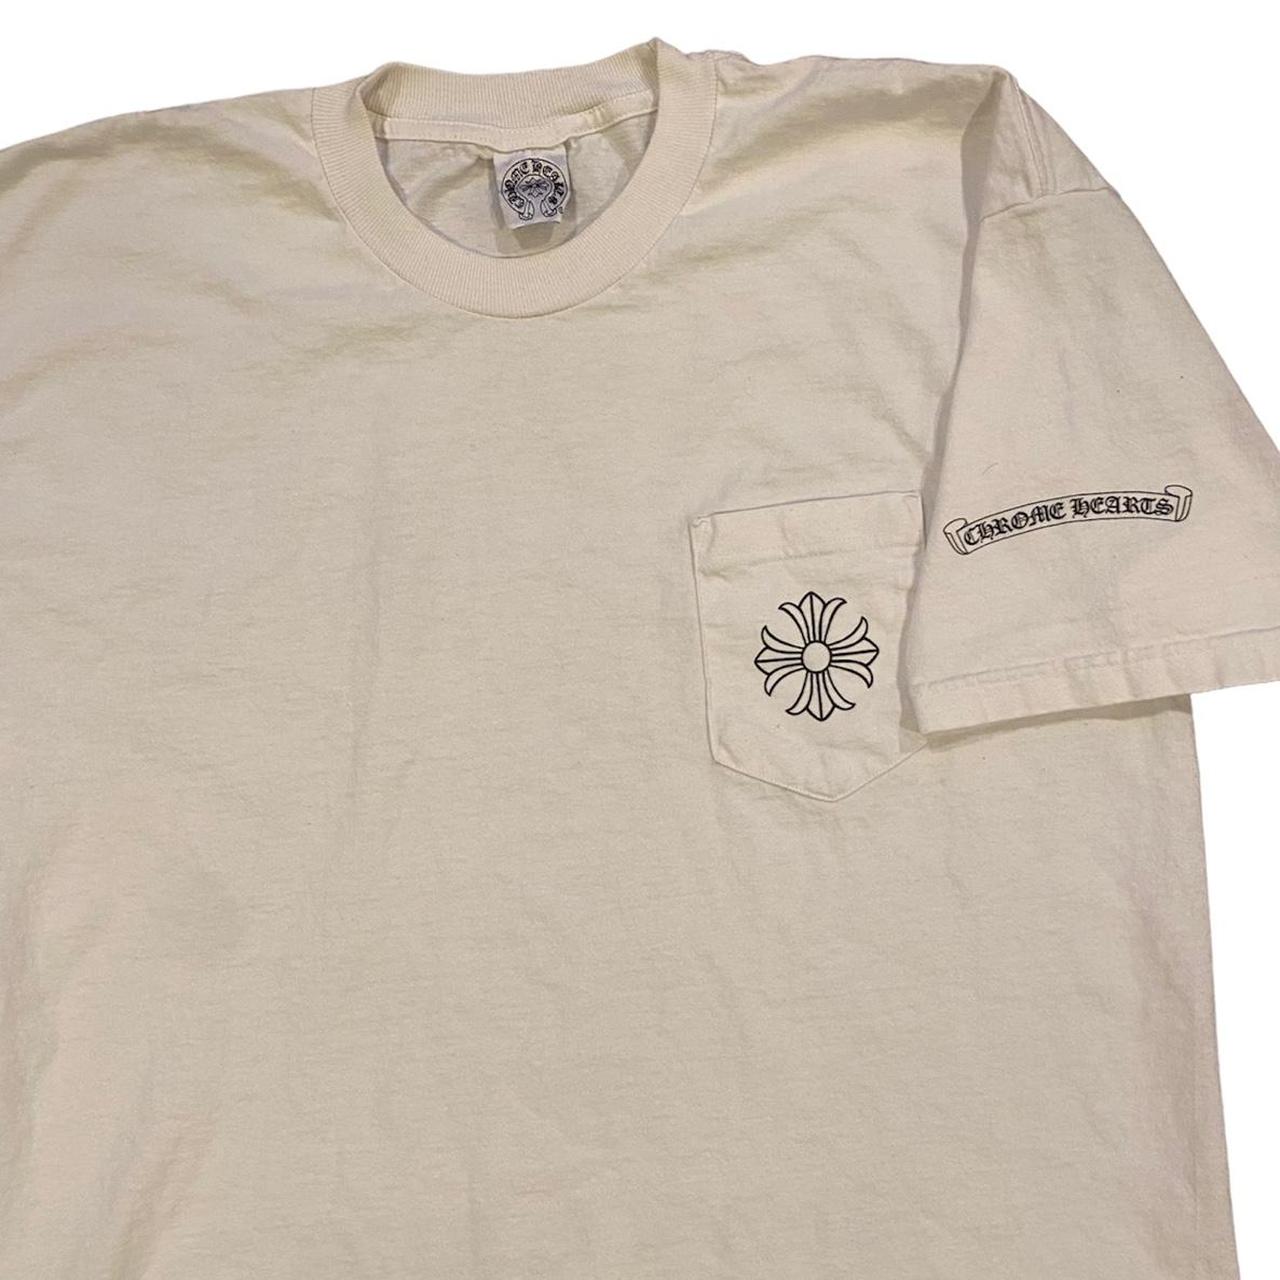 Vintage 90s/Y2k Chrome Hearts Pocket T-shirt, Good... - Depop